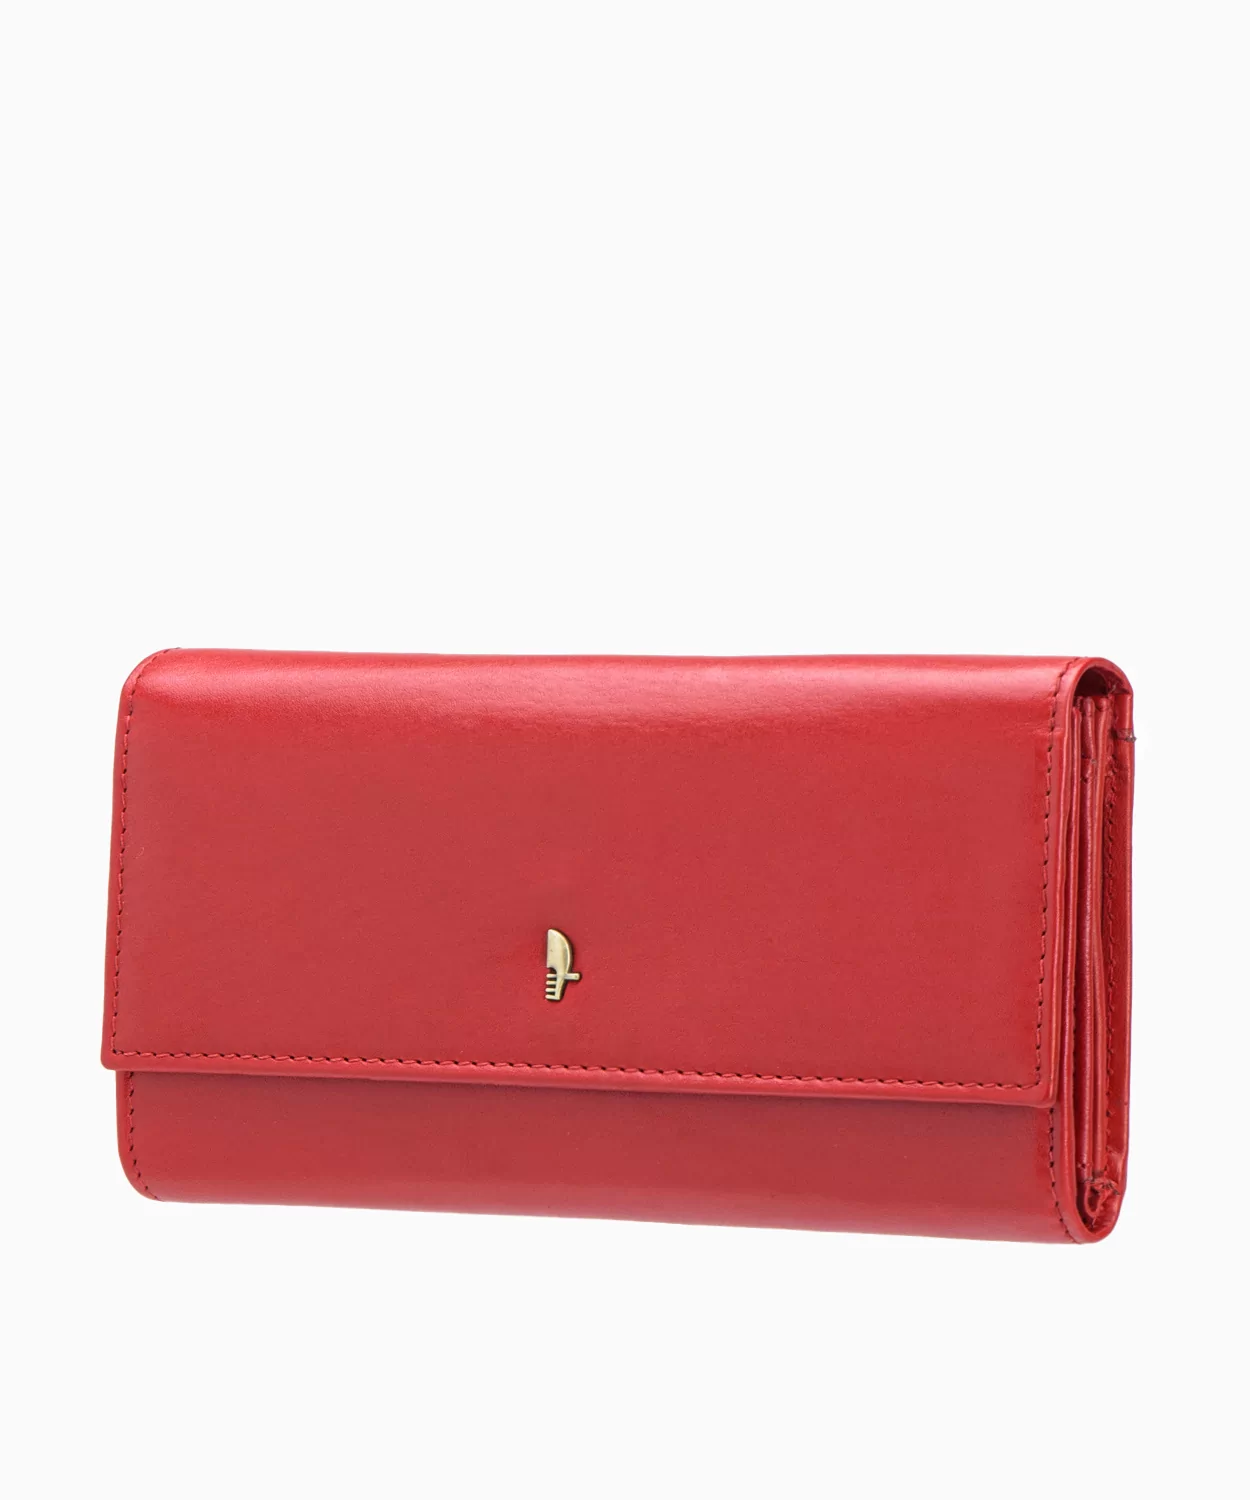 PUCCINI Duży czerwony portfel damski skórzany